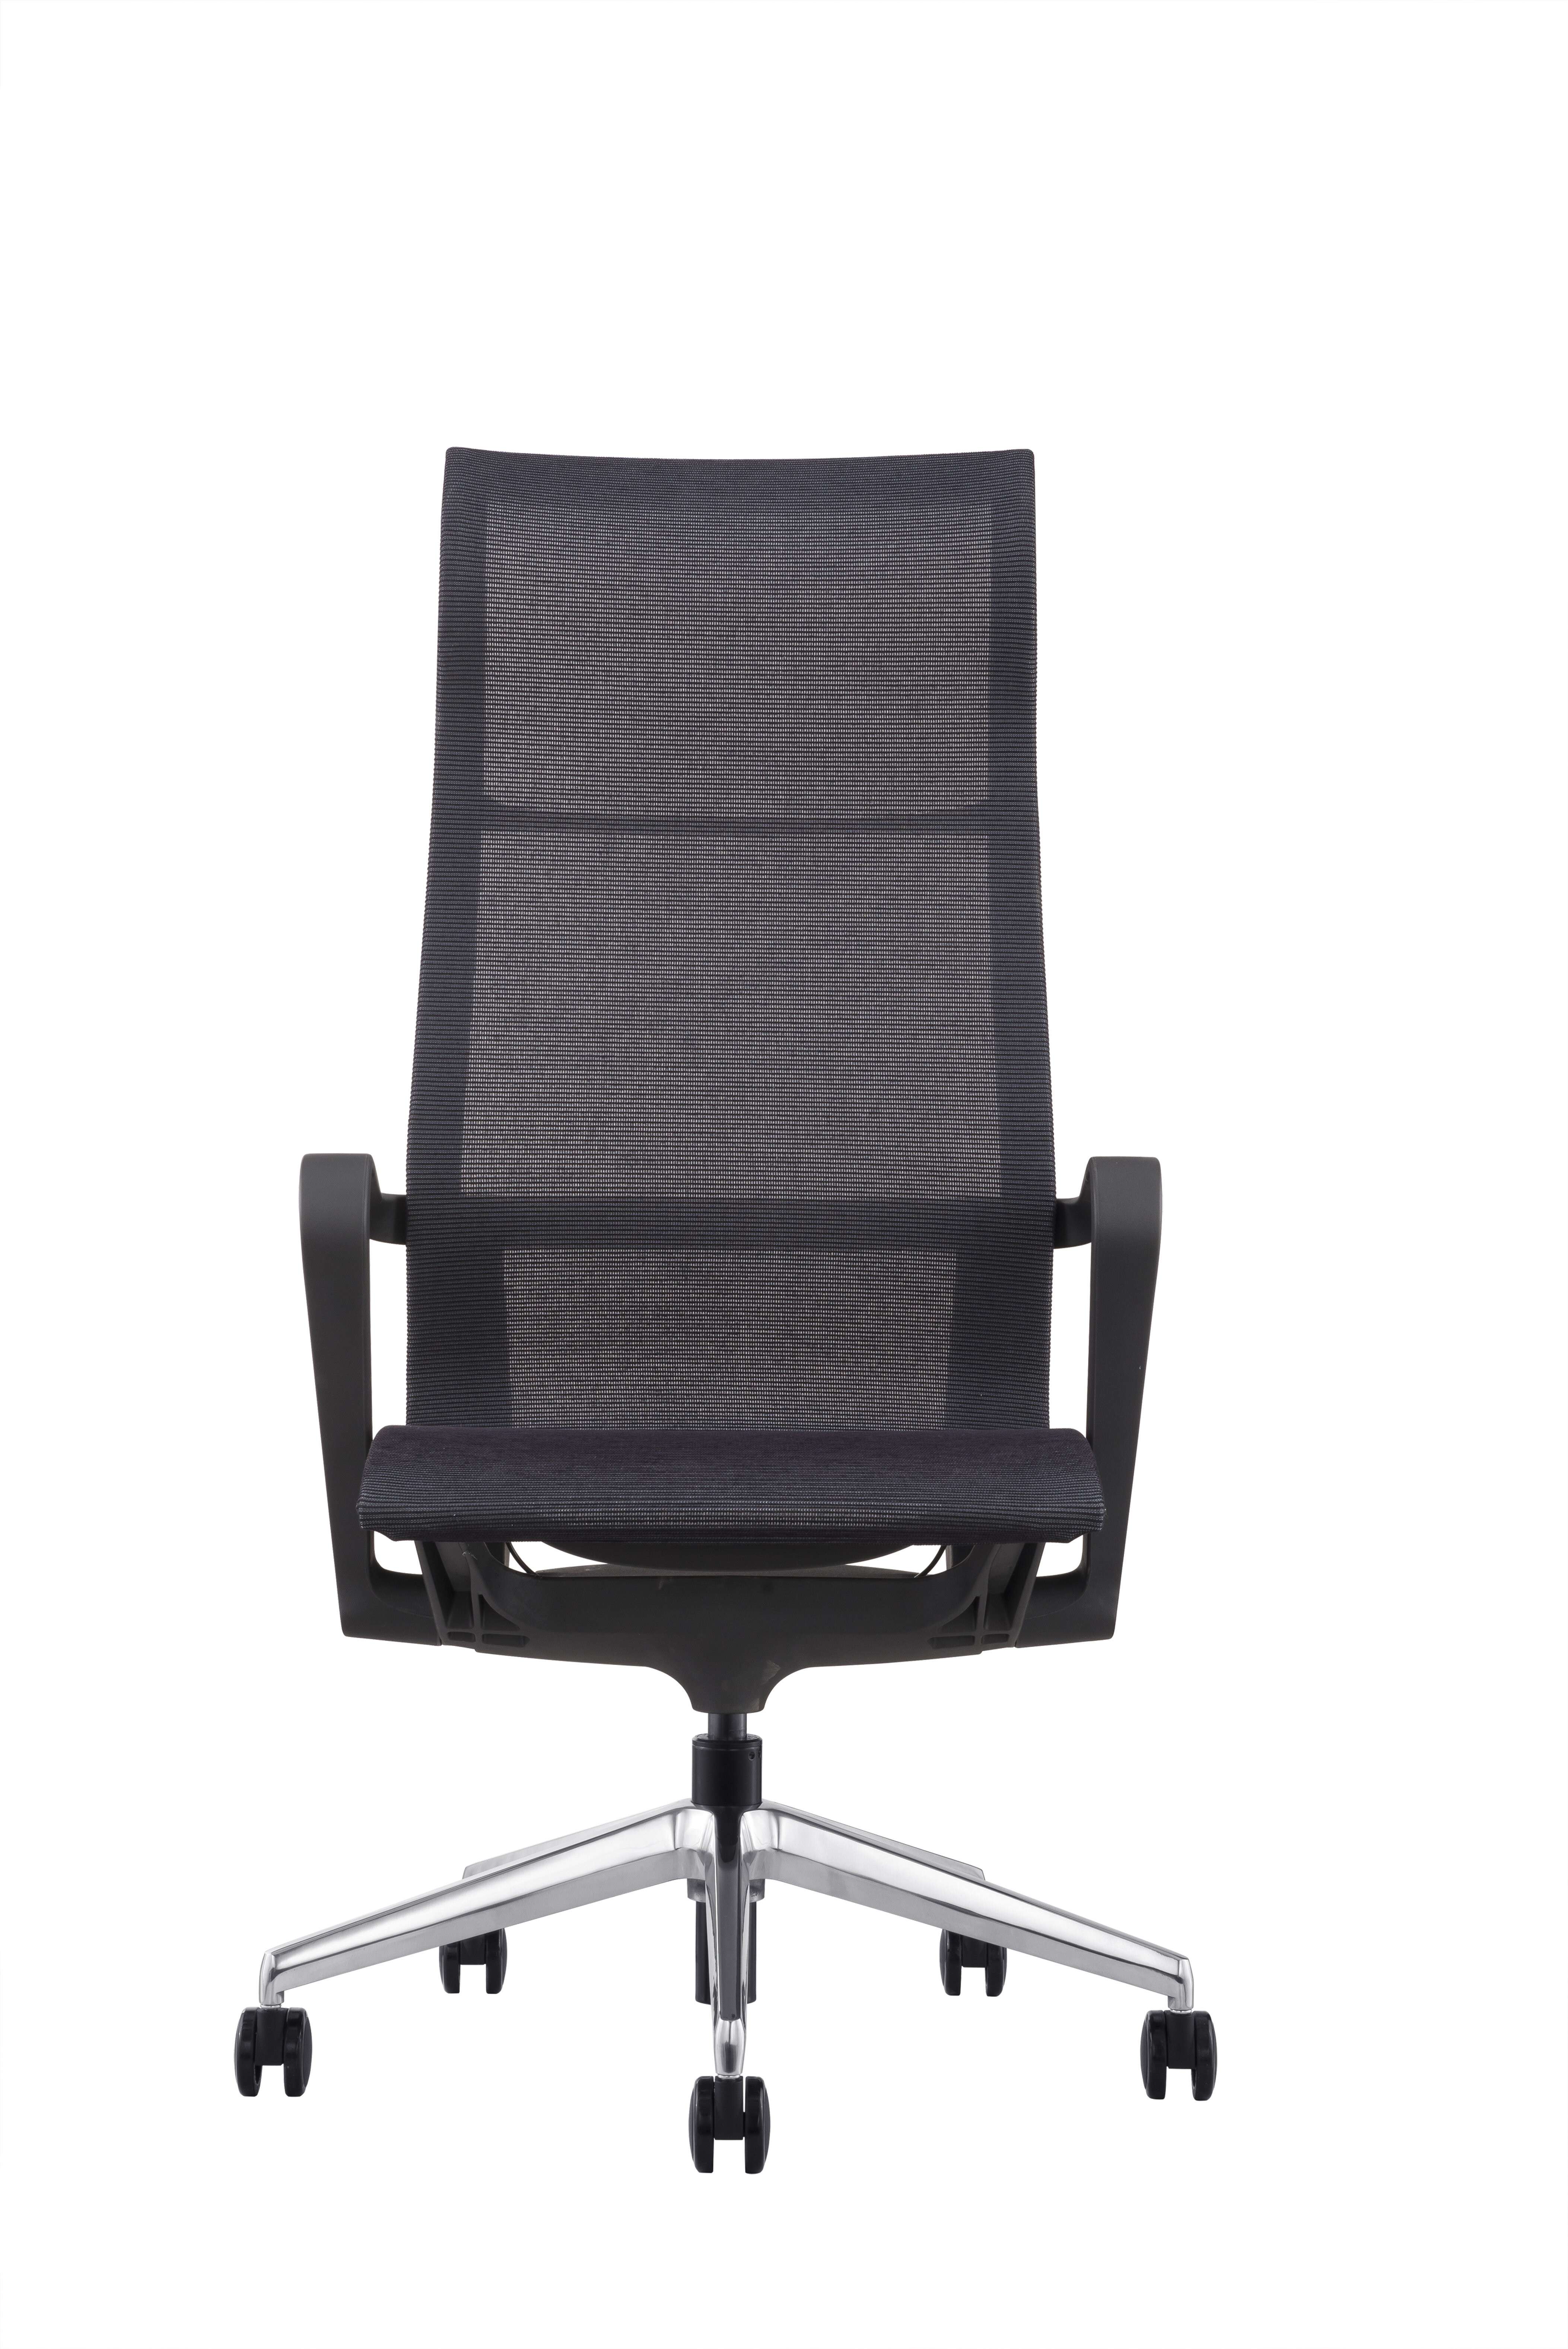 Poppin Dark Gray Max Task Chair, Mid Back, White Frame